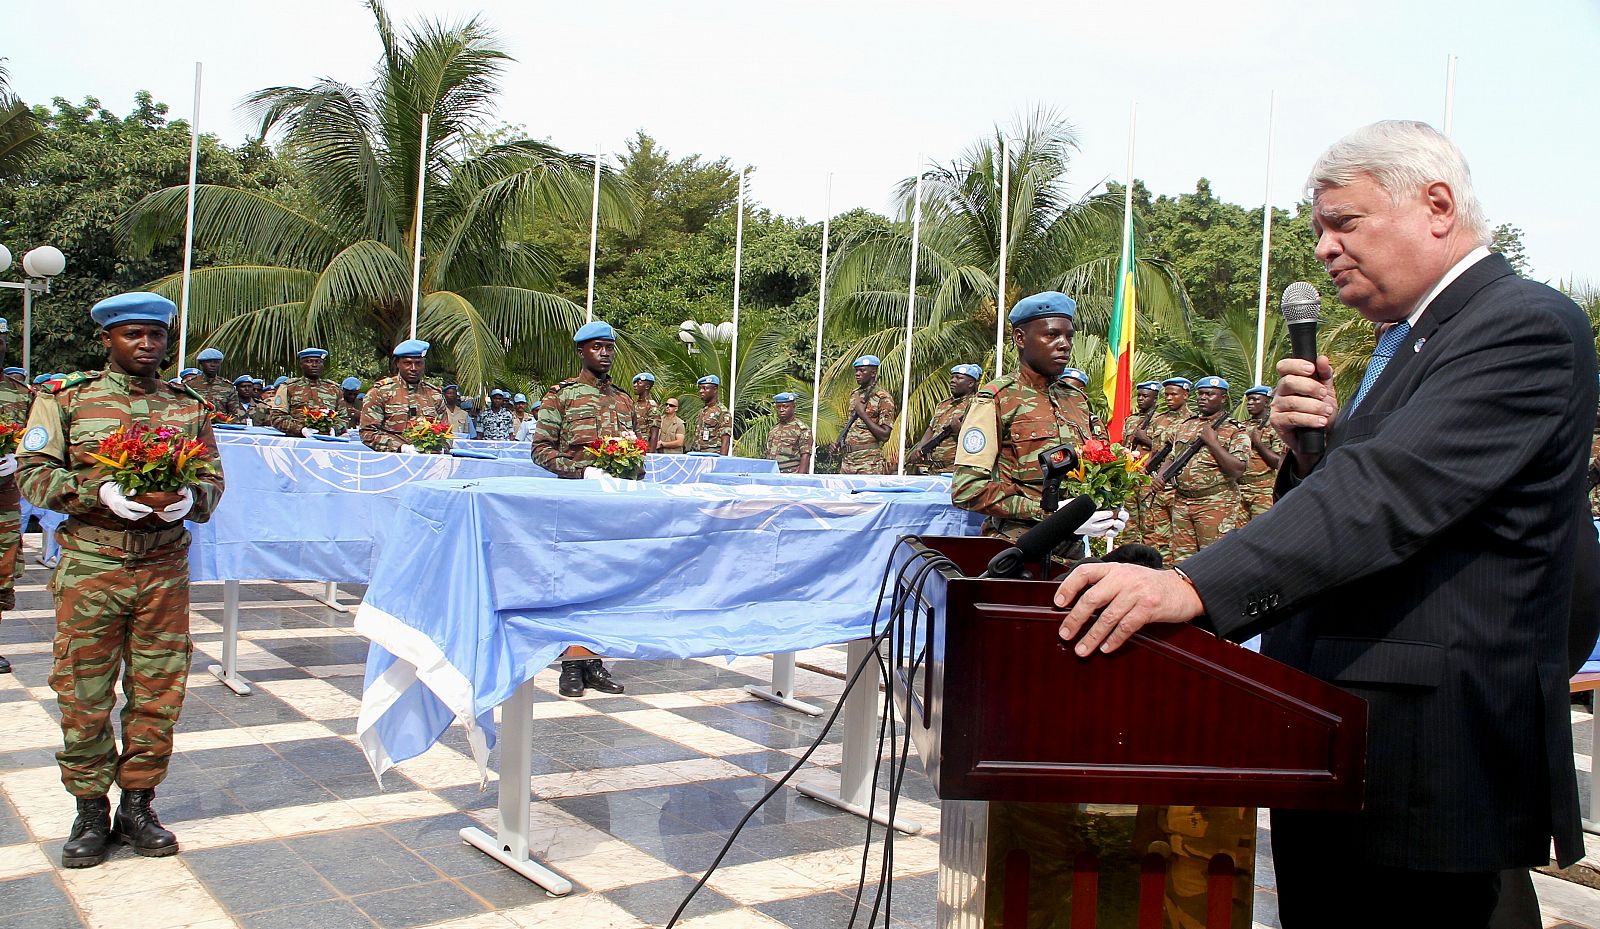 El subsecretario general para misiones de paz de la ONU, Herve Ladsous, en un discurso por los funerales de nueve soldados fallecidos el pasado viernes en Mali.